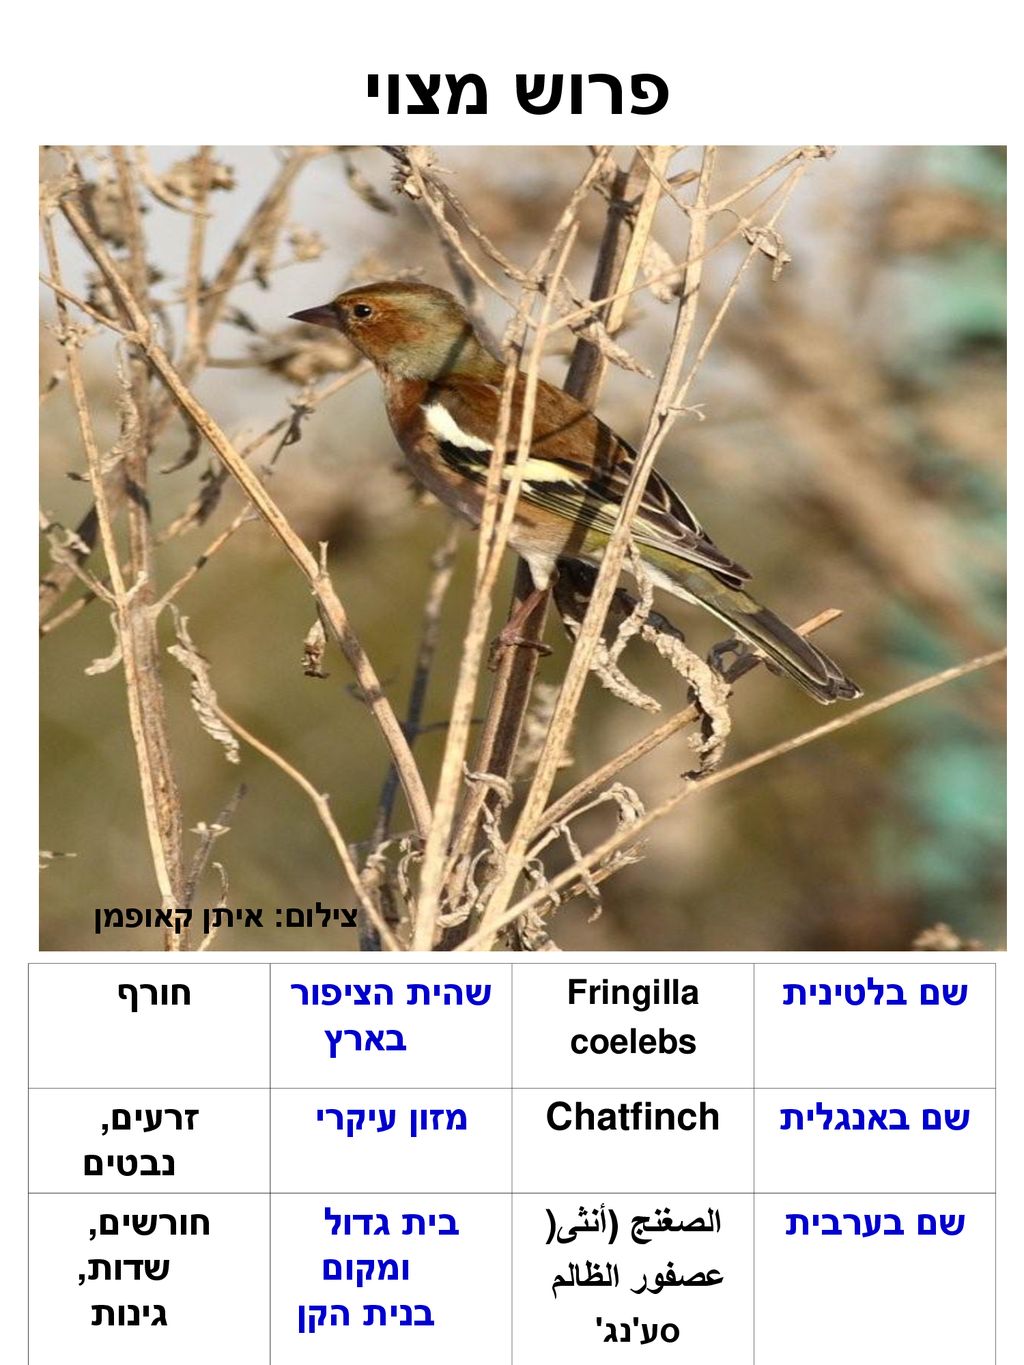 פרוש מצוי שם בלטינית שהית הציפור בארץ חורף שם באנגלית Chatfinch